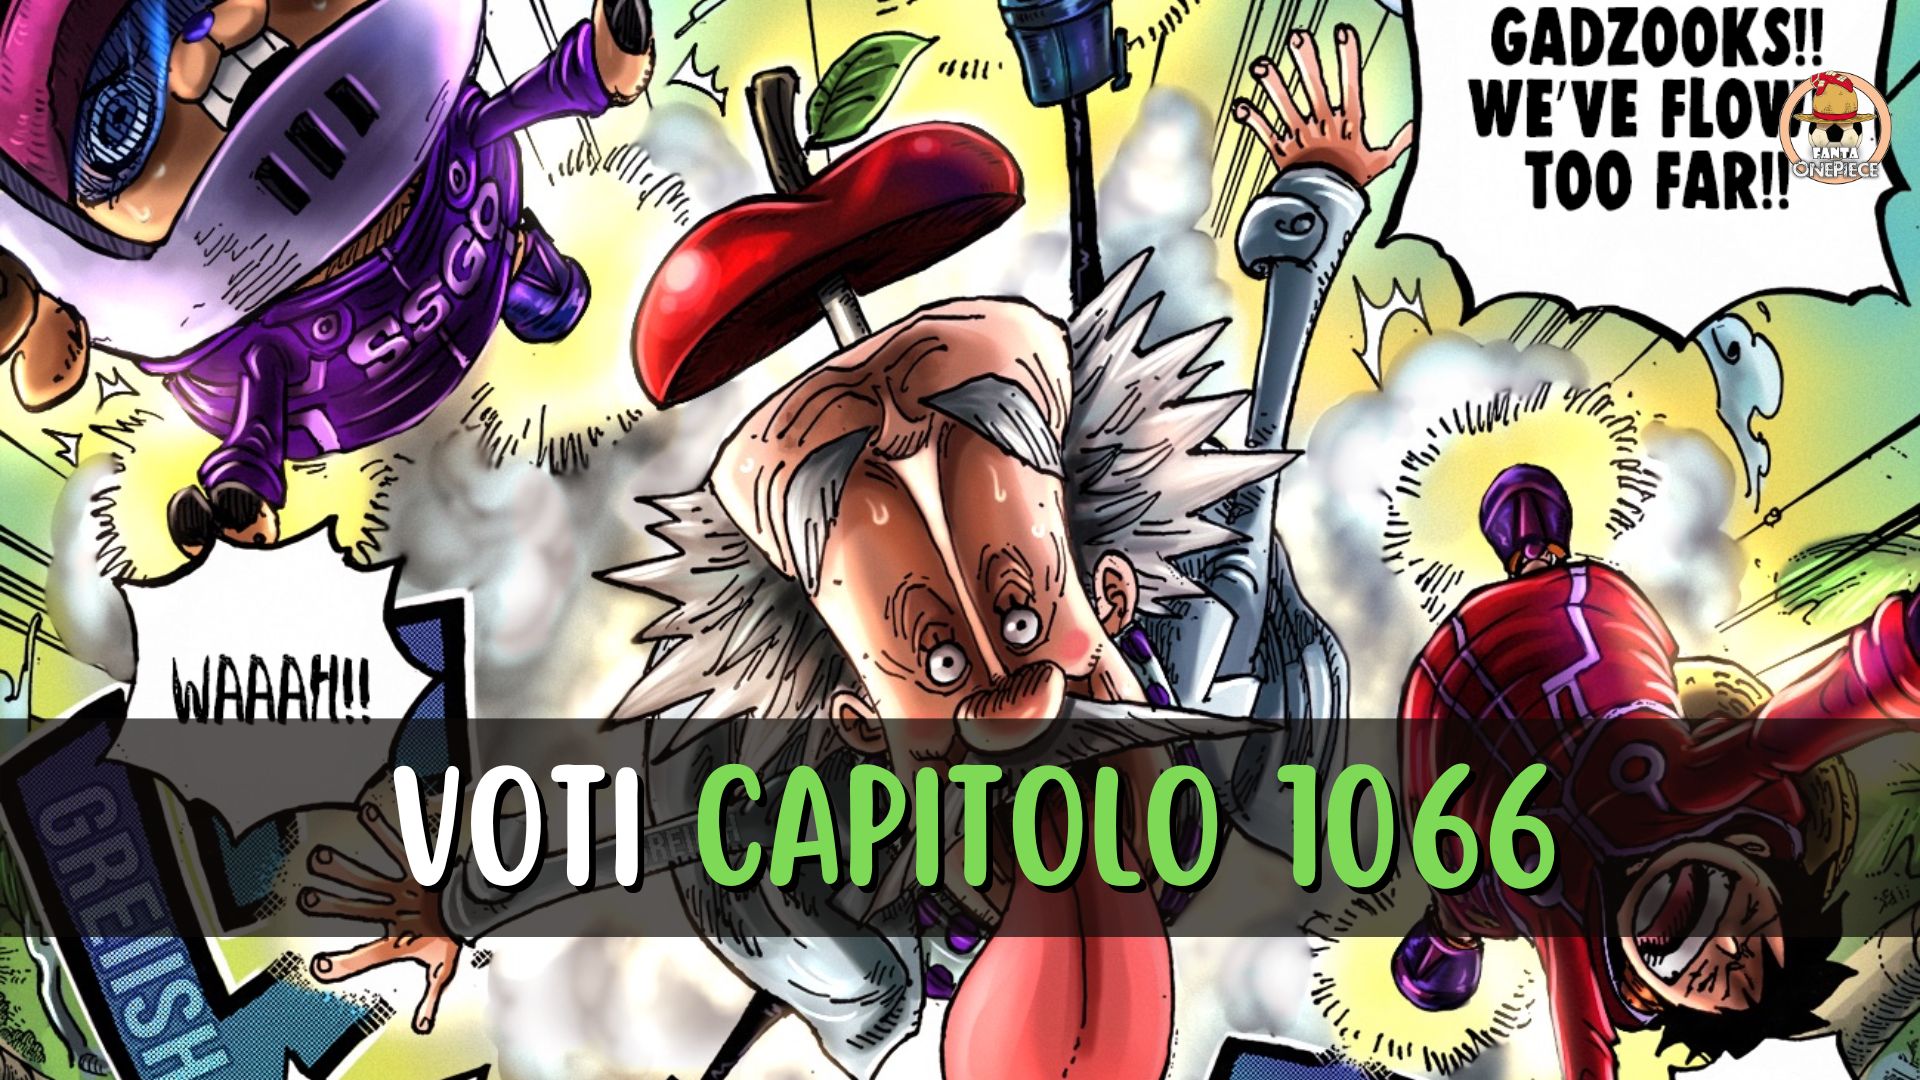 One Piece 1065: gli spoiler aggiornati - OnePiece.it